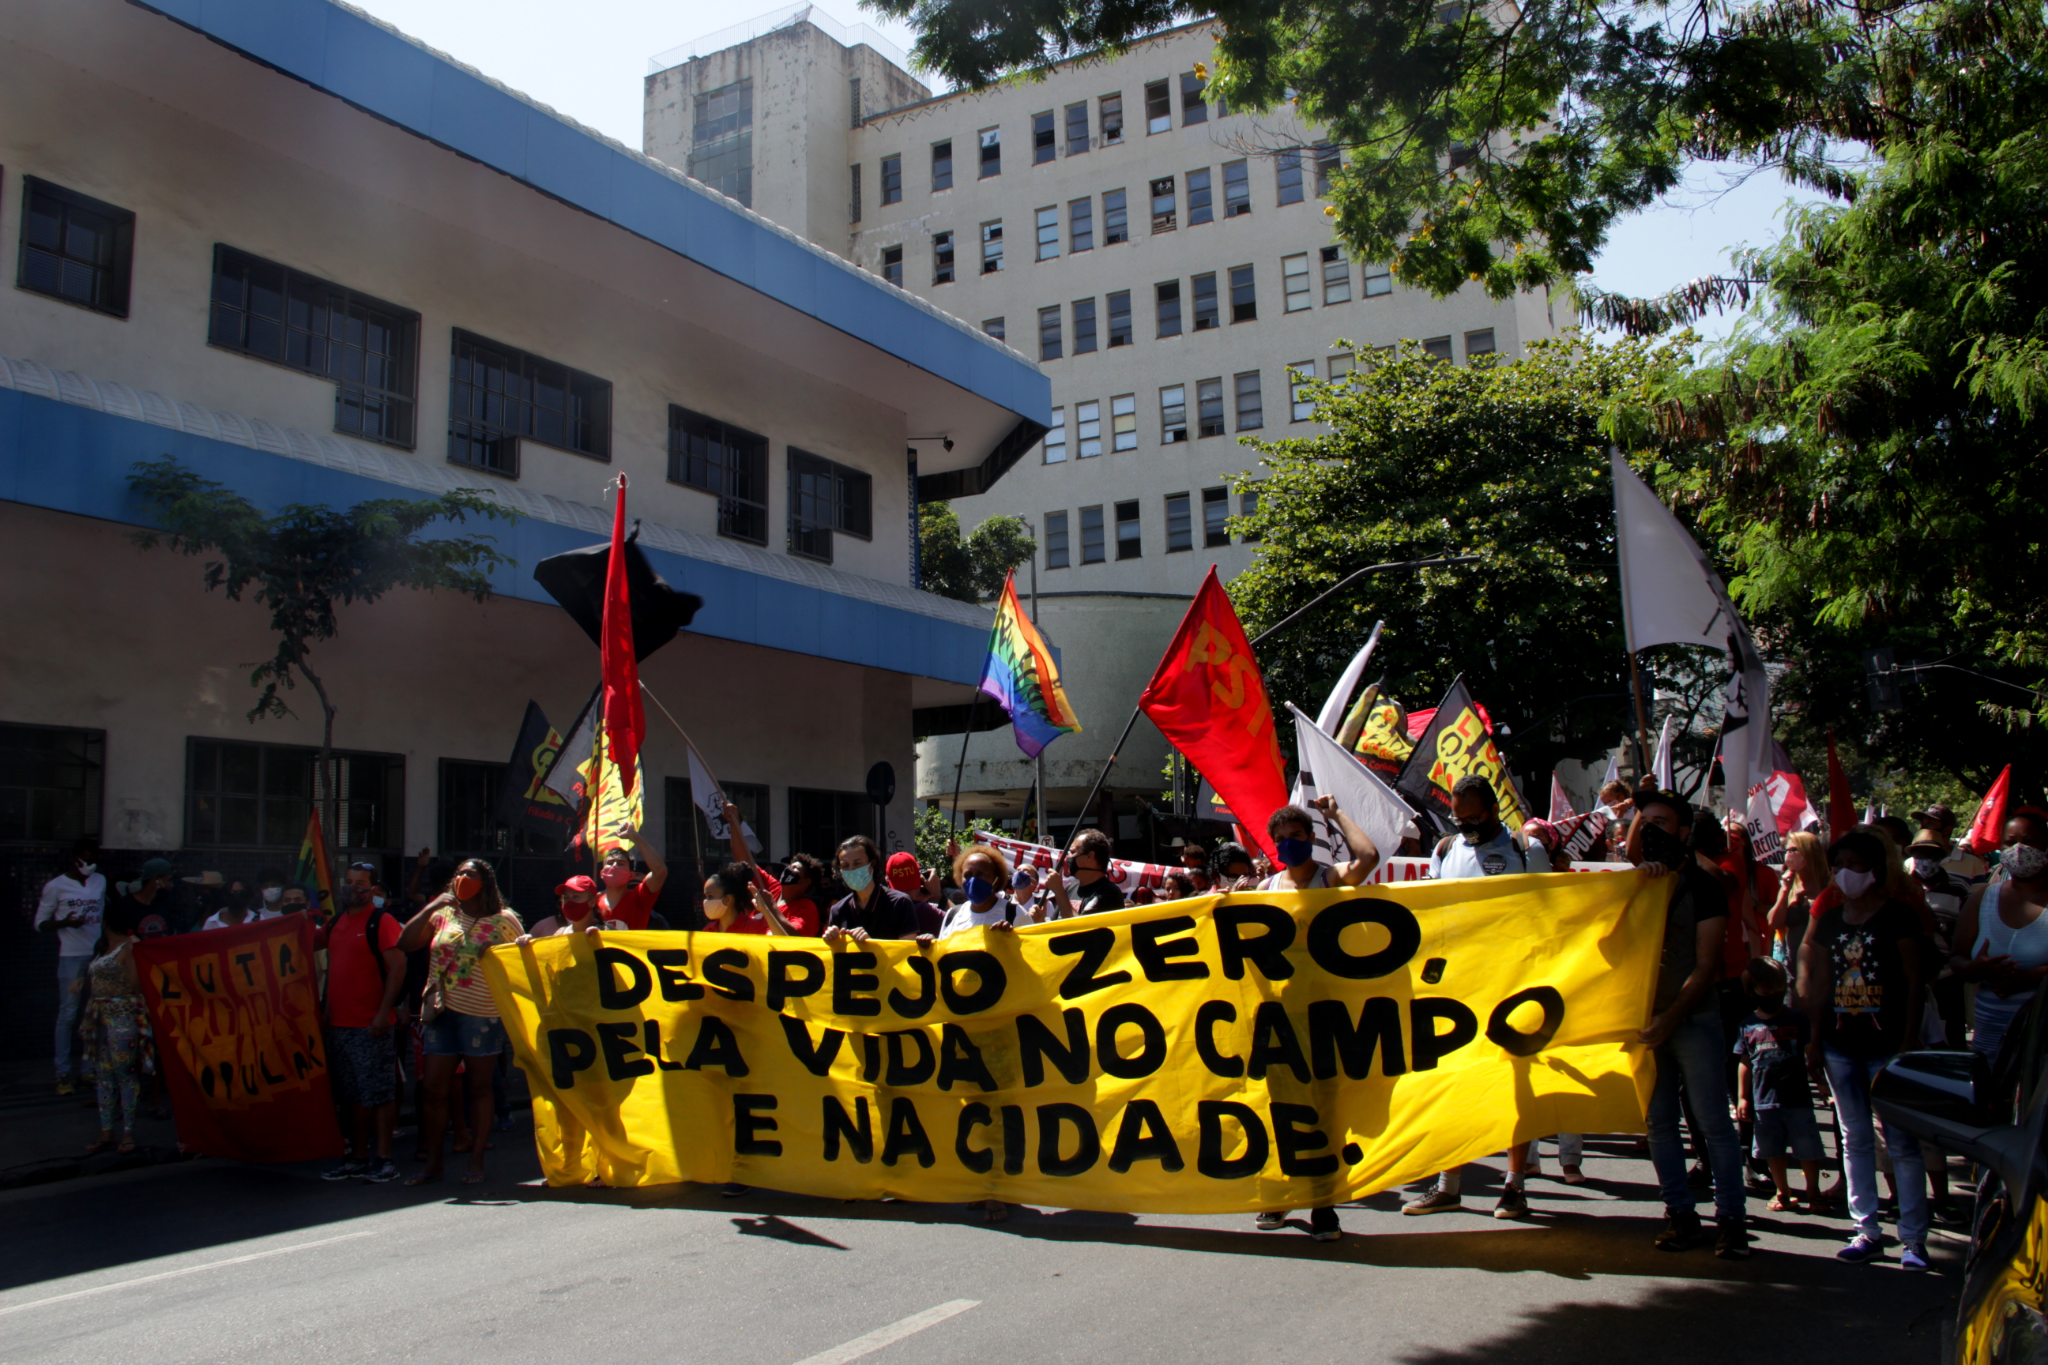 Despejo Zero durante a pandemia: moradores protestam em Belo Horizonte